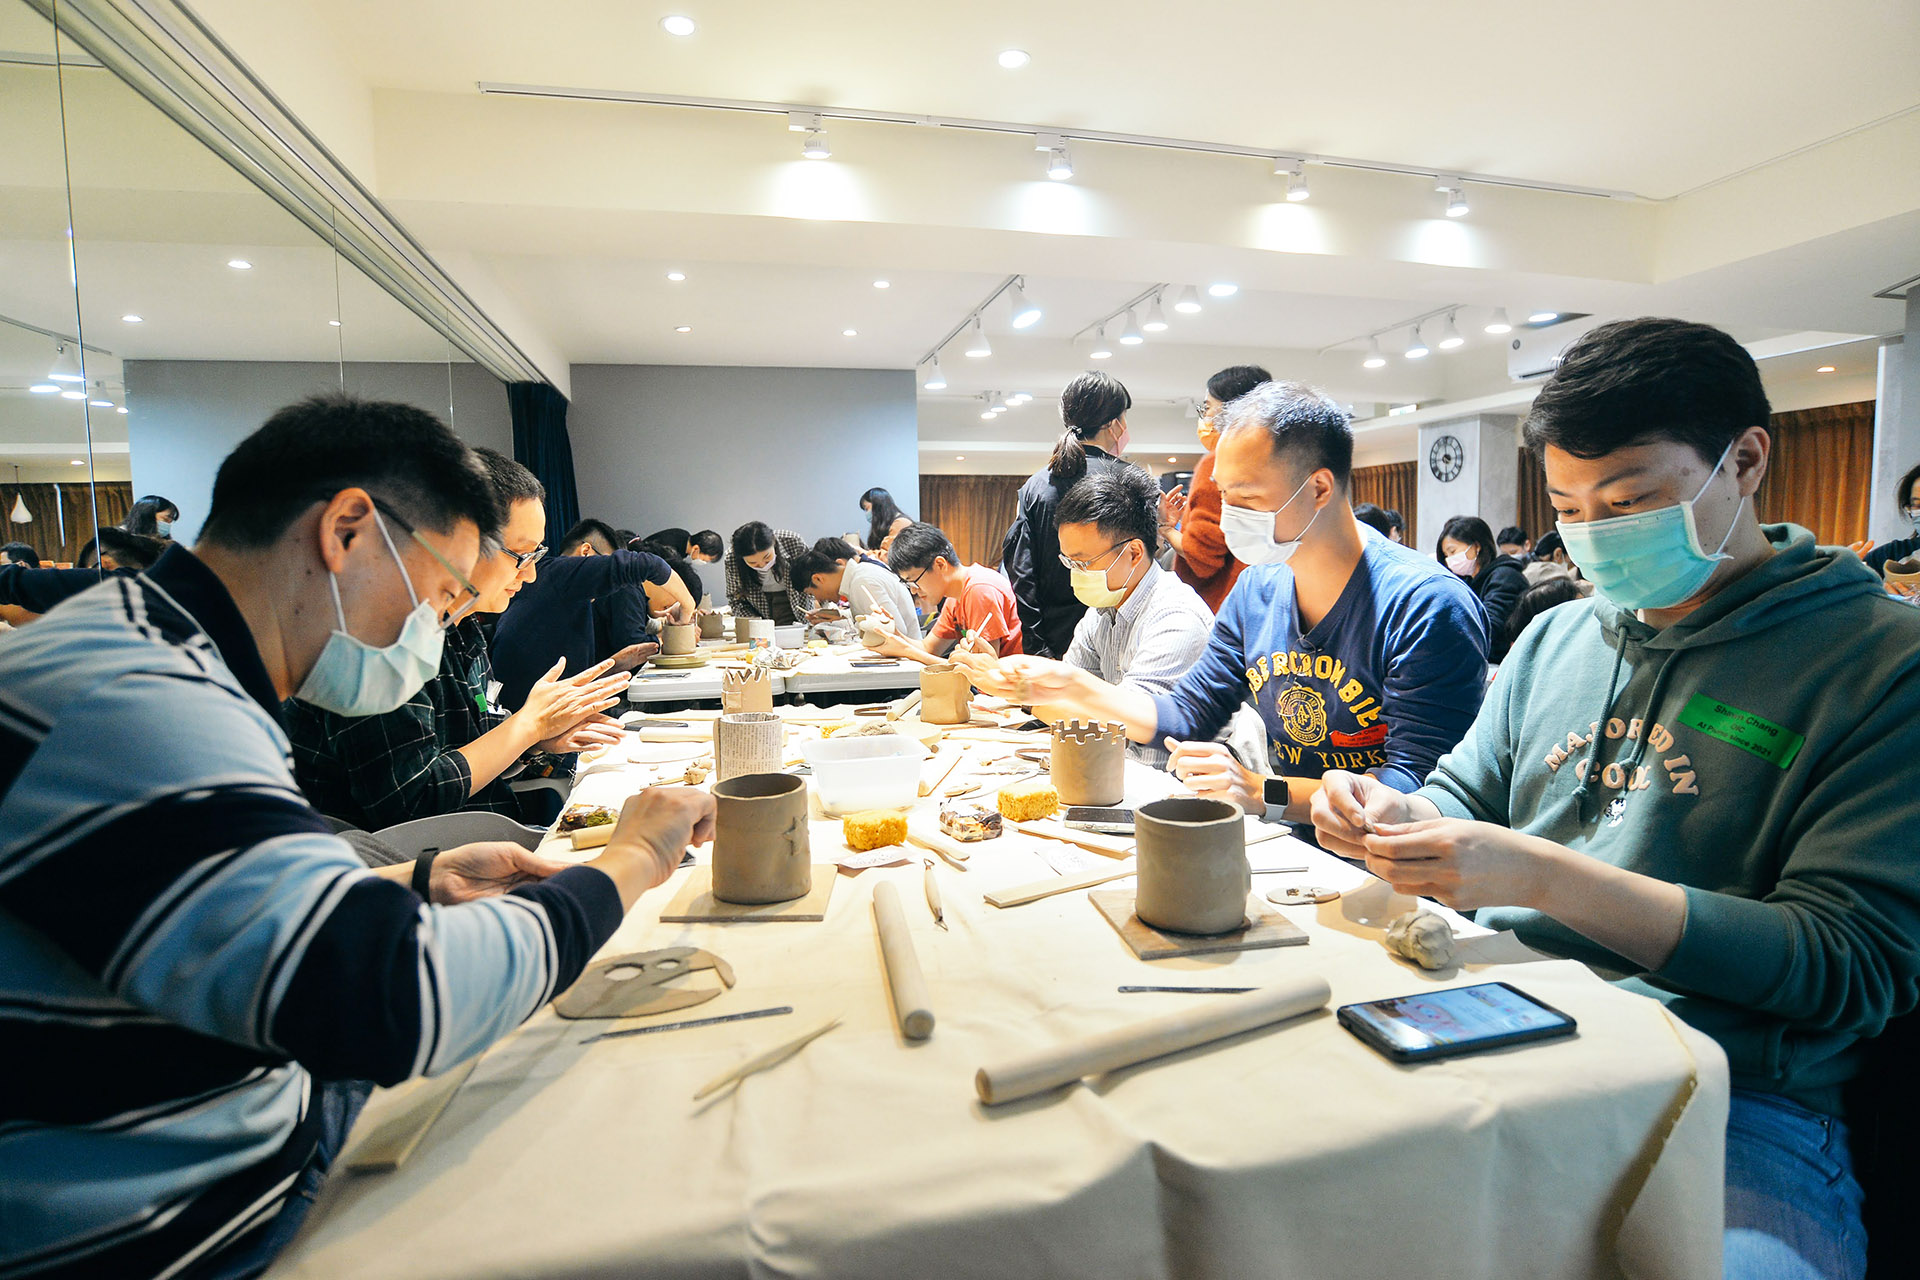 2022 新企業課程推薦 陪伴心靈的作品 台北陶藝課 上課實況攝影4